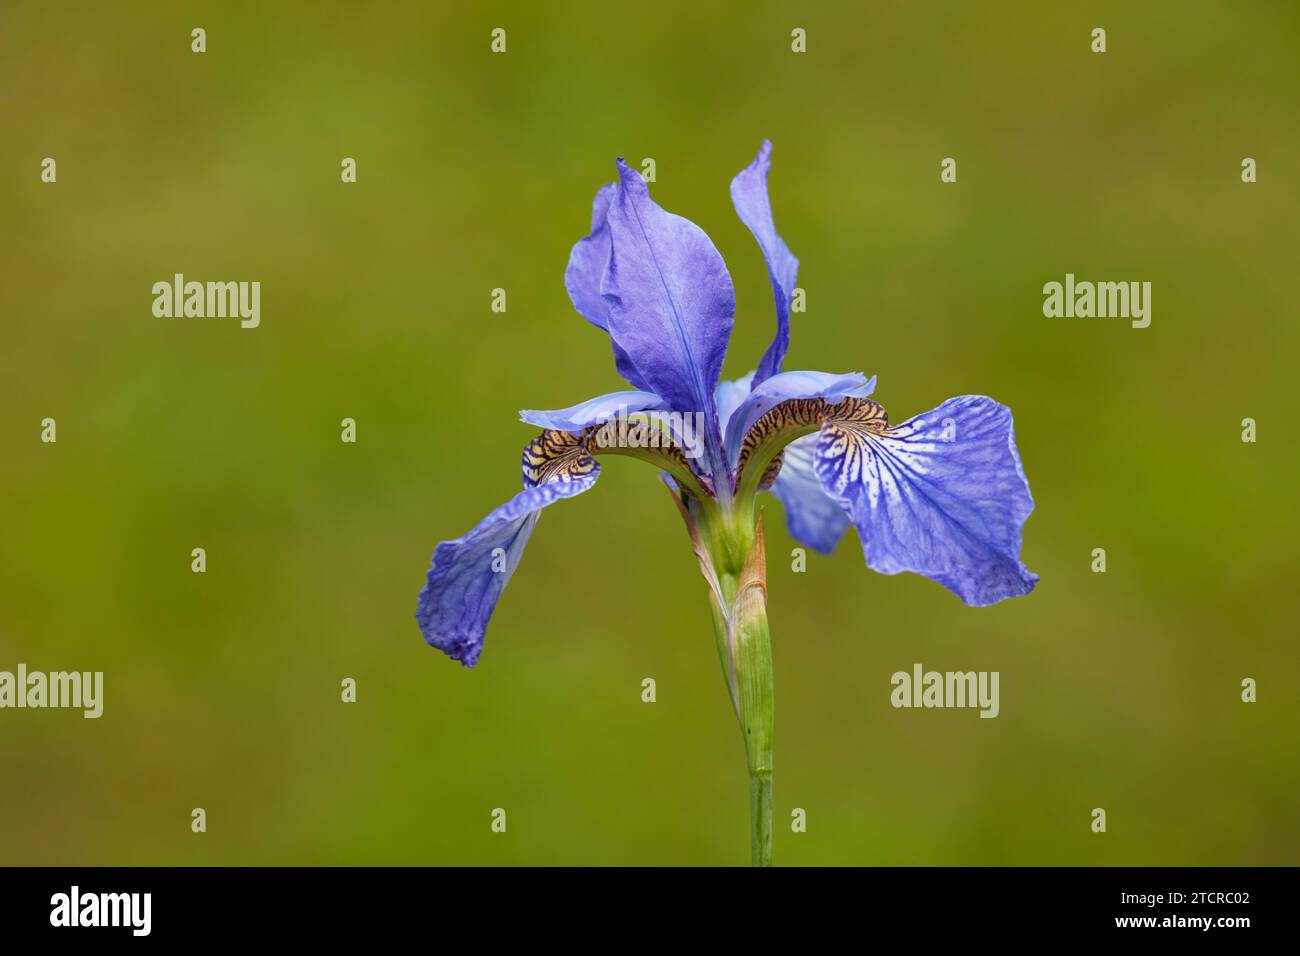 Gros plan d'une seule fleur violet-bleu d'iris sibirica (Iris sibirica) sur fond vert. Banque D'Images